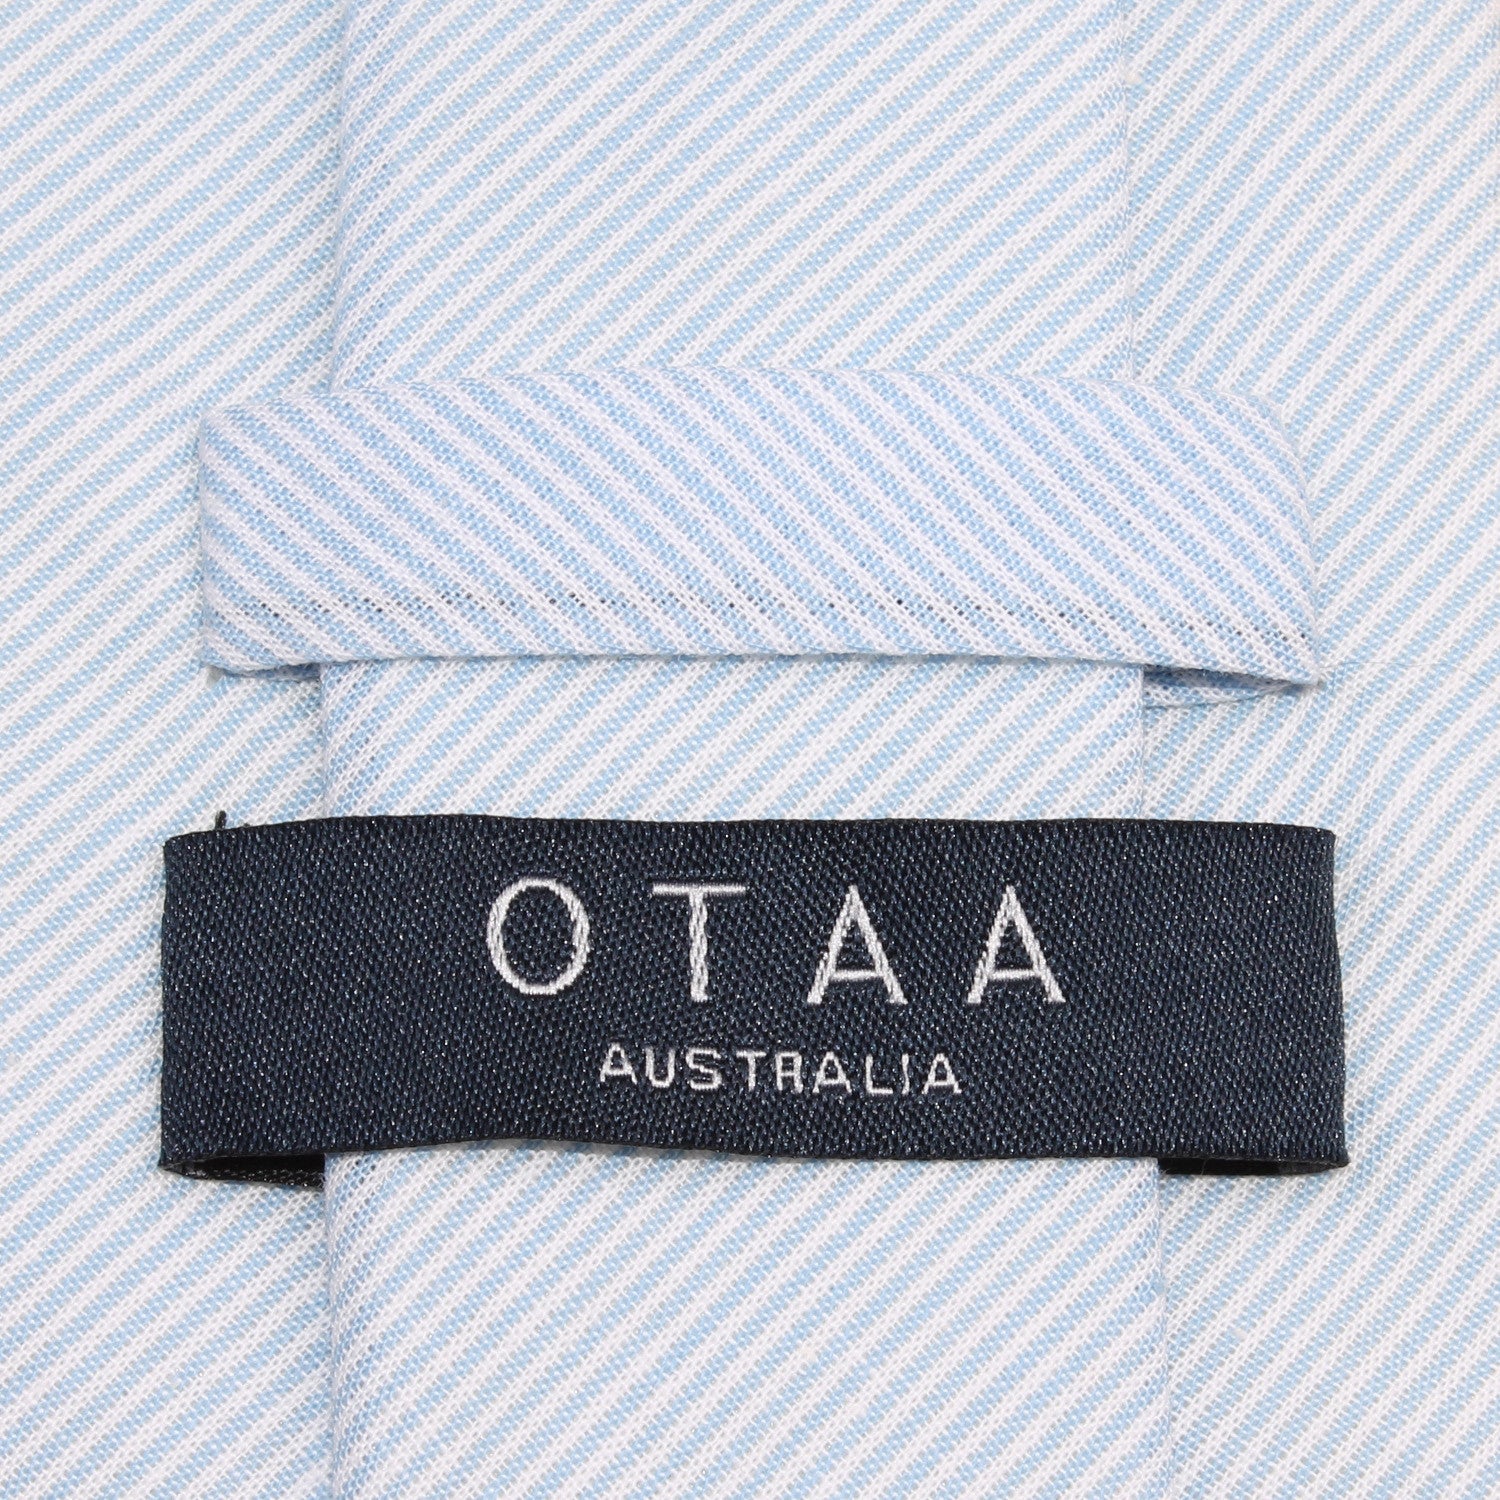 Light Blue and White Pinstripes Cotton Skinny Tie OTAA Australia